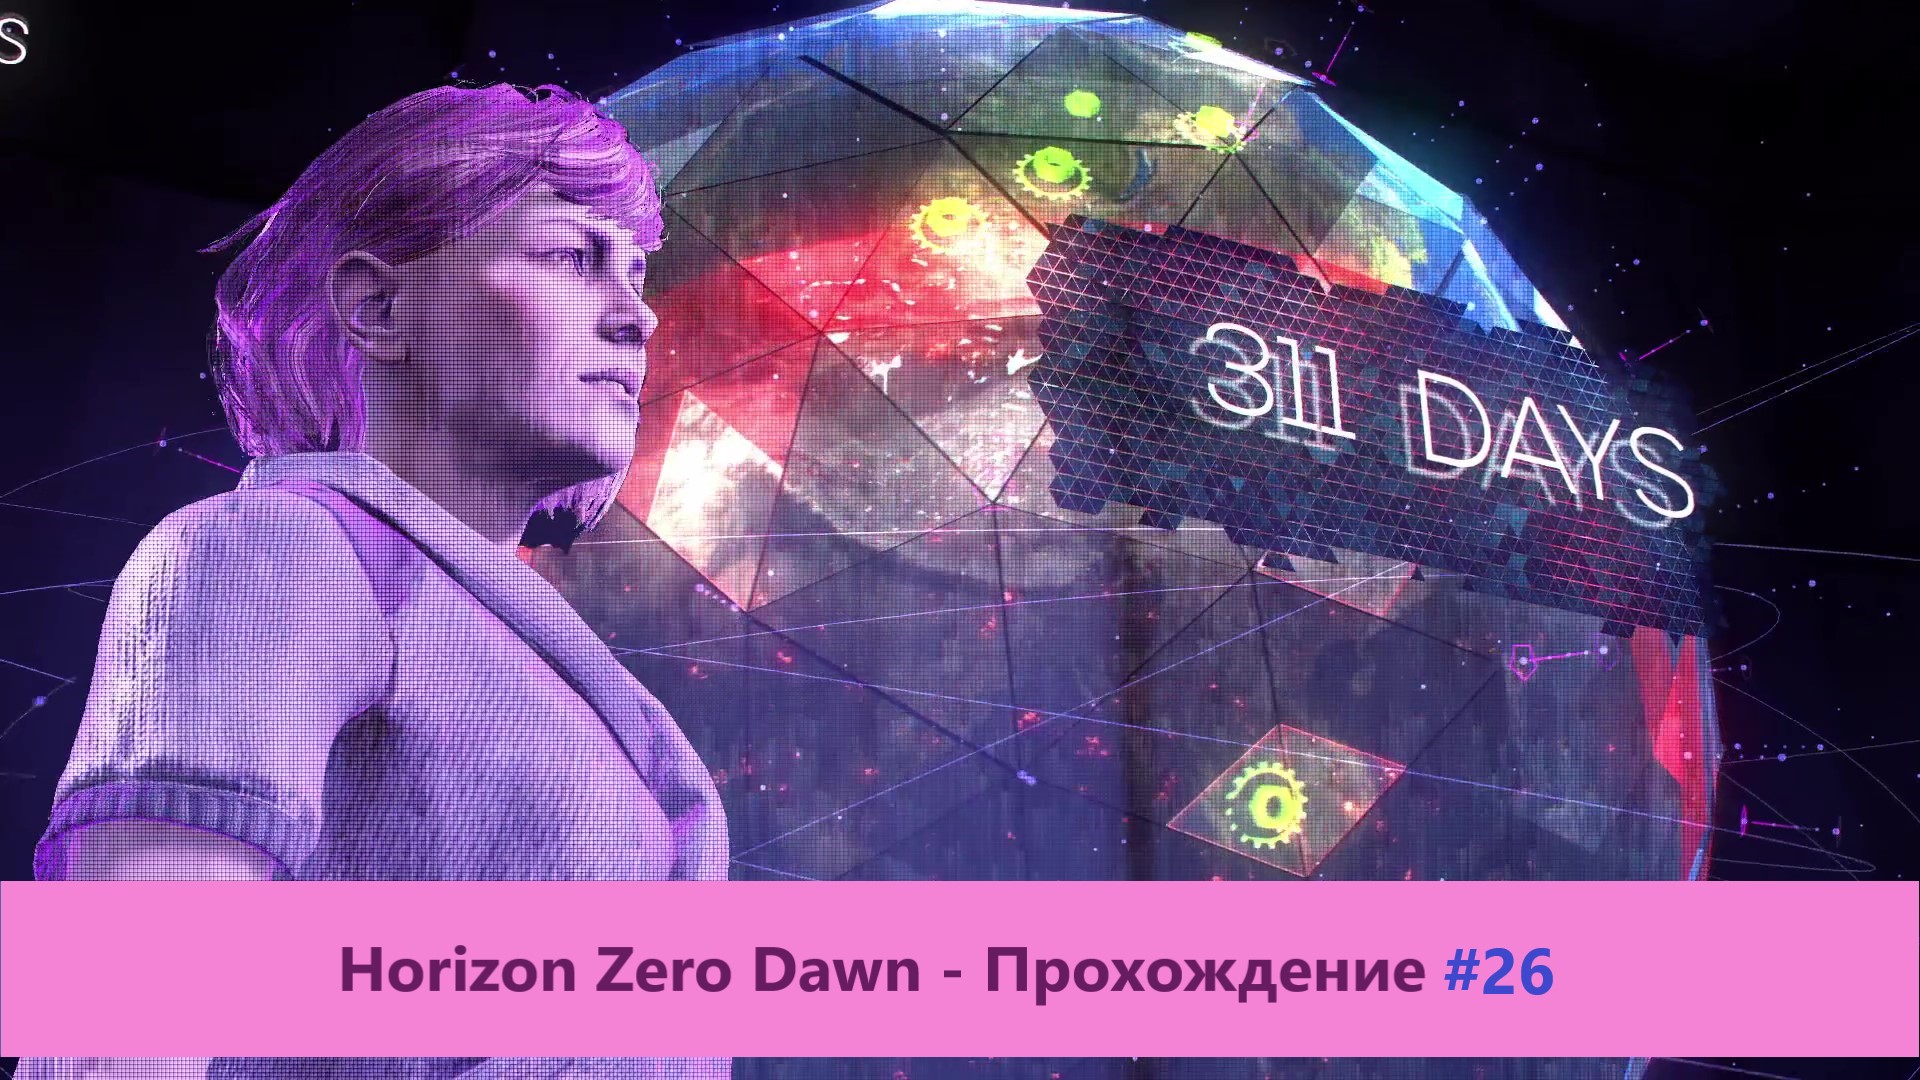 Horizon Zero Dawn - Прохождение #26